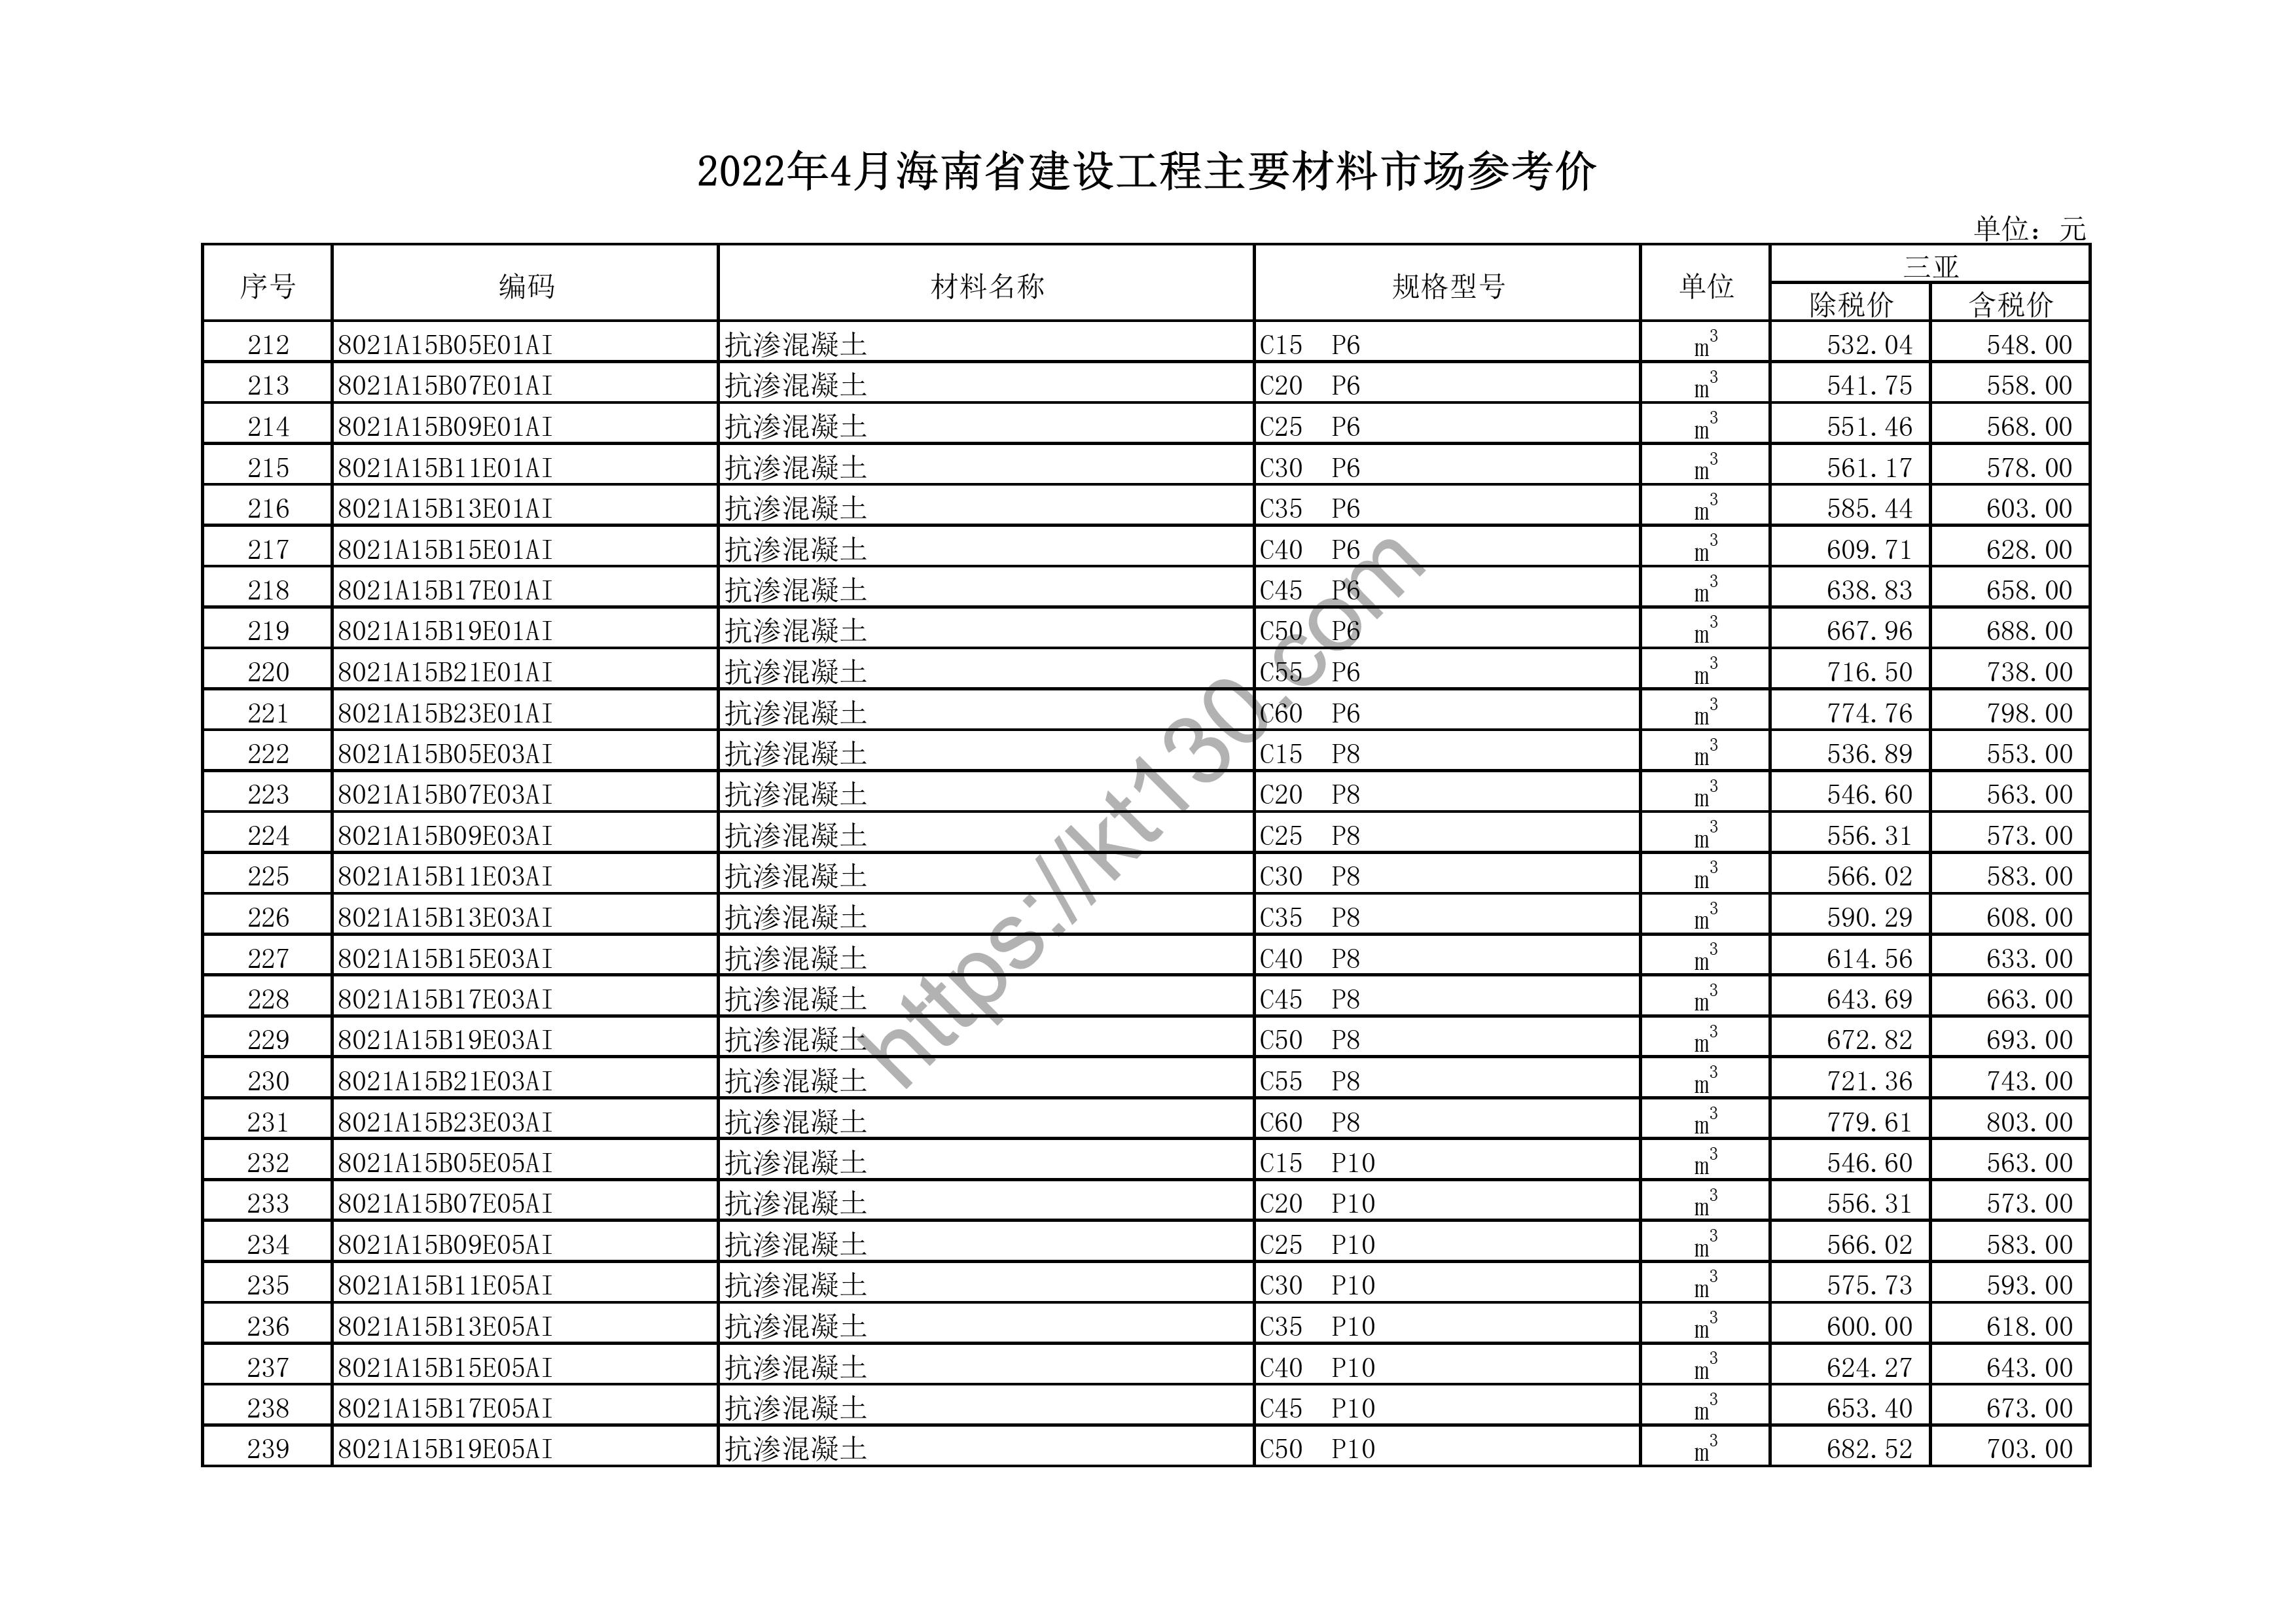 海南省2022年4月建筑材料价_钢化玻璃_44124